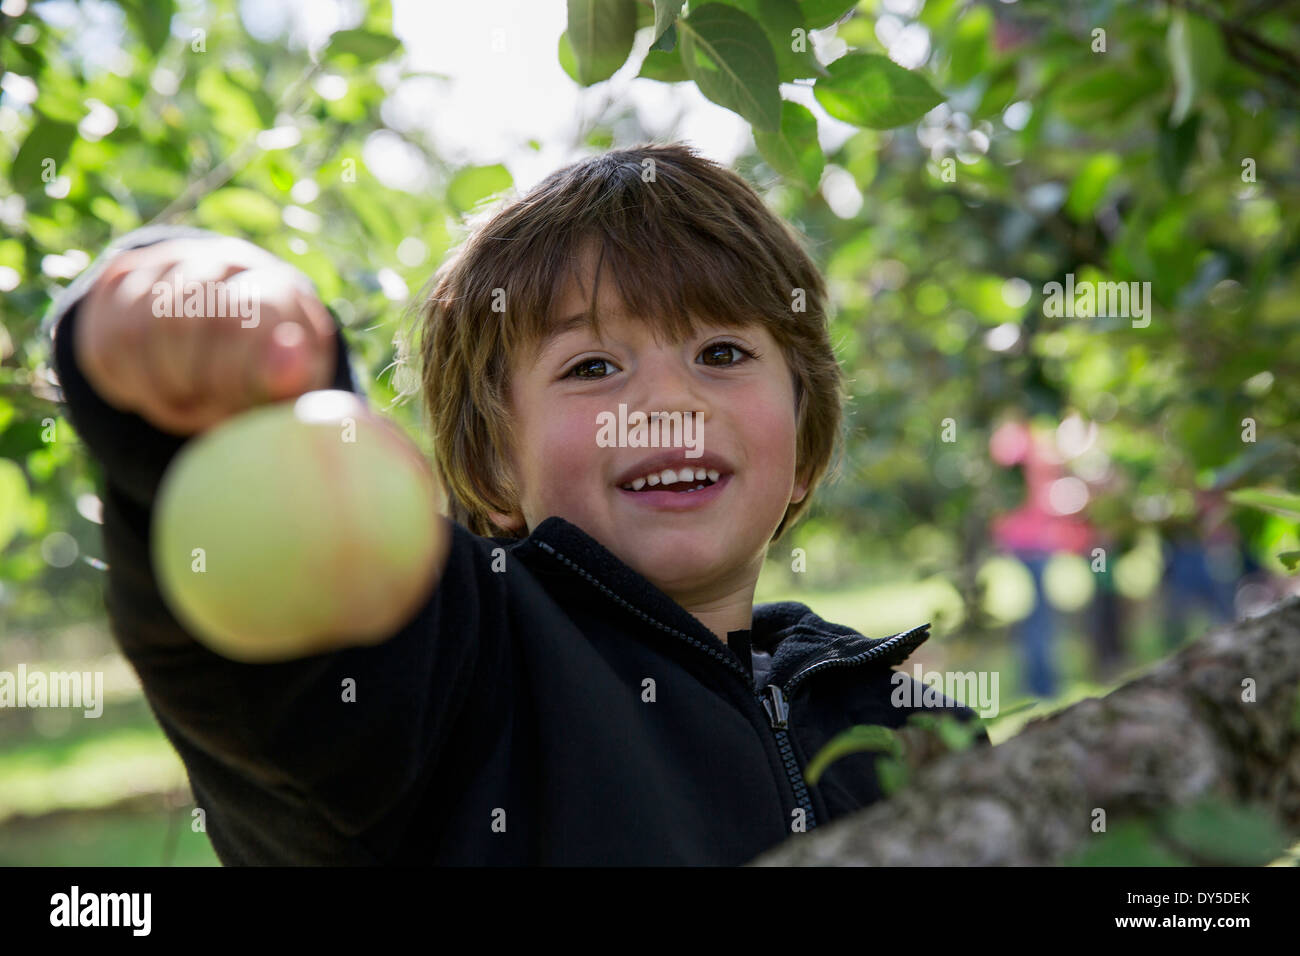 Portrait of a Boy holding up apple fraîchement cueillies Banque D'Images